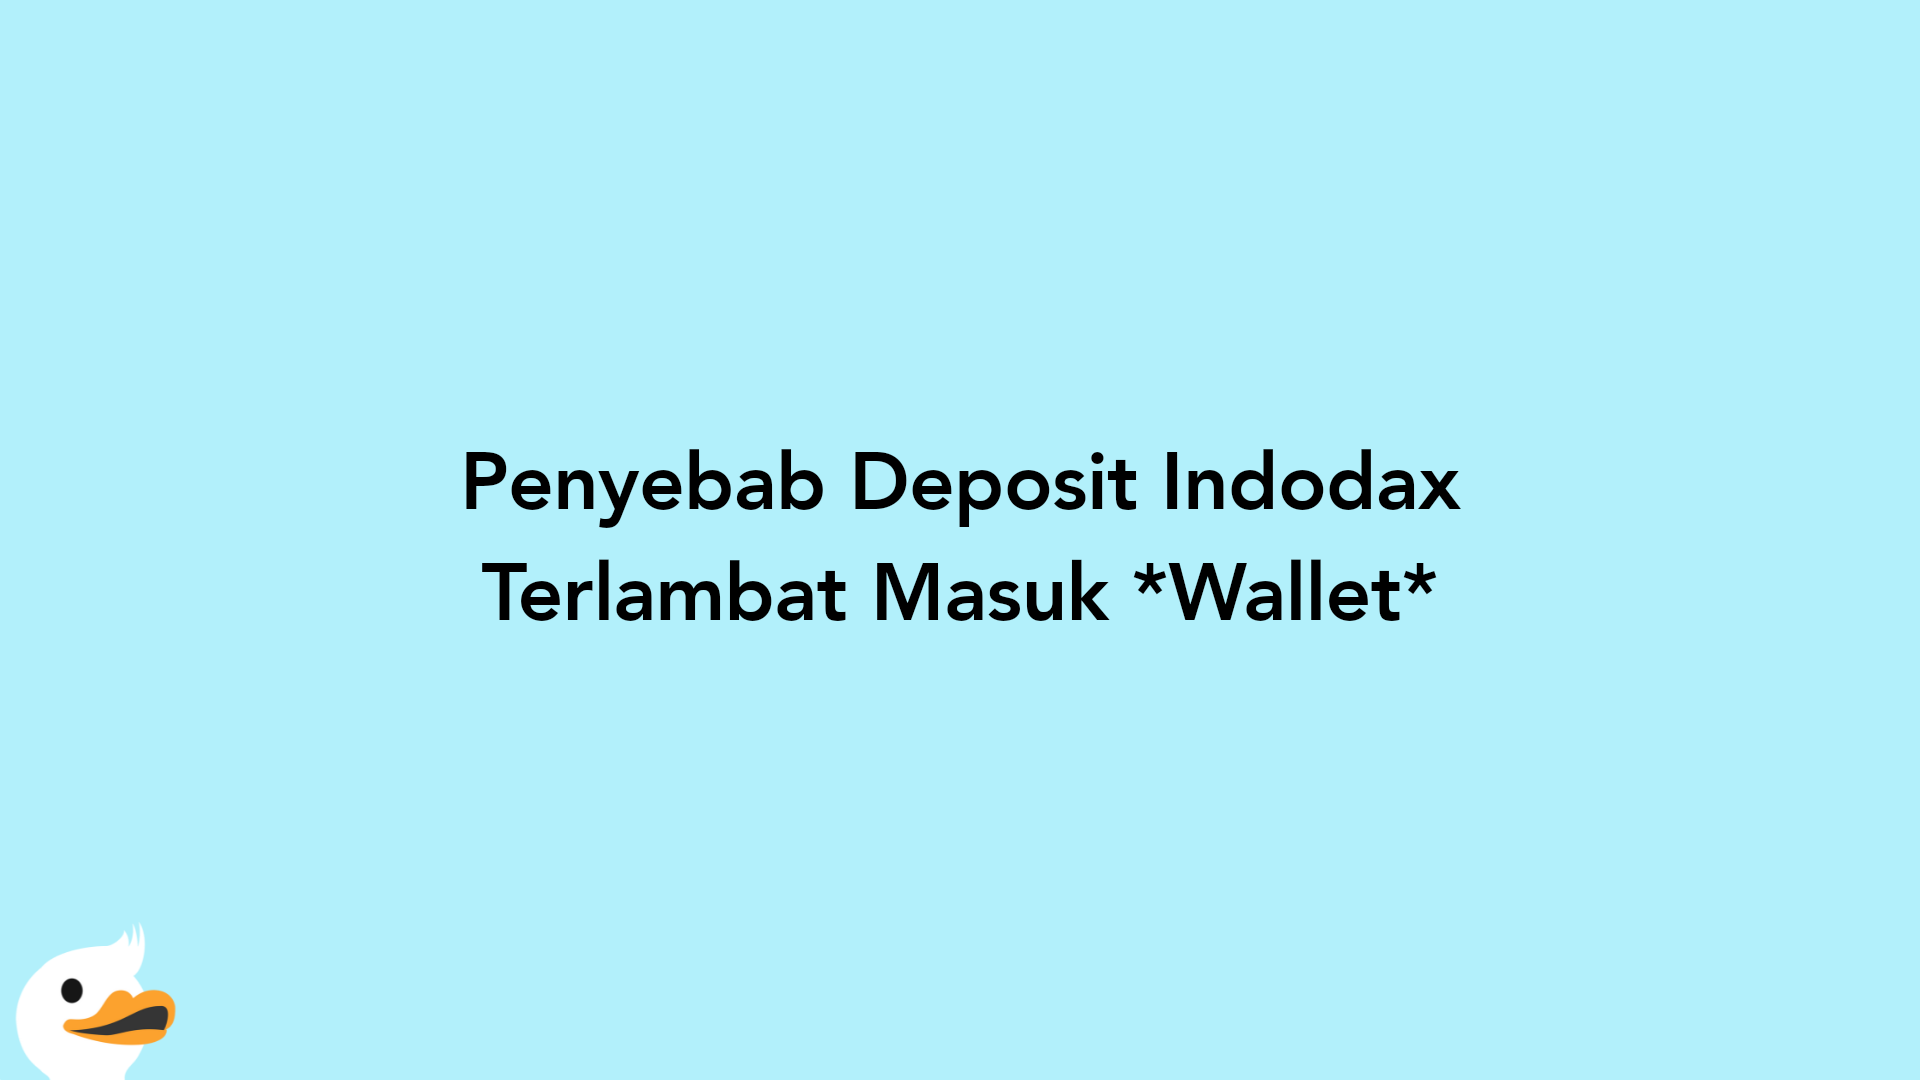 Penyebab Deposit Indodax Terlambat Masuk Wallet